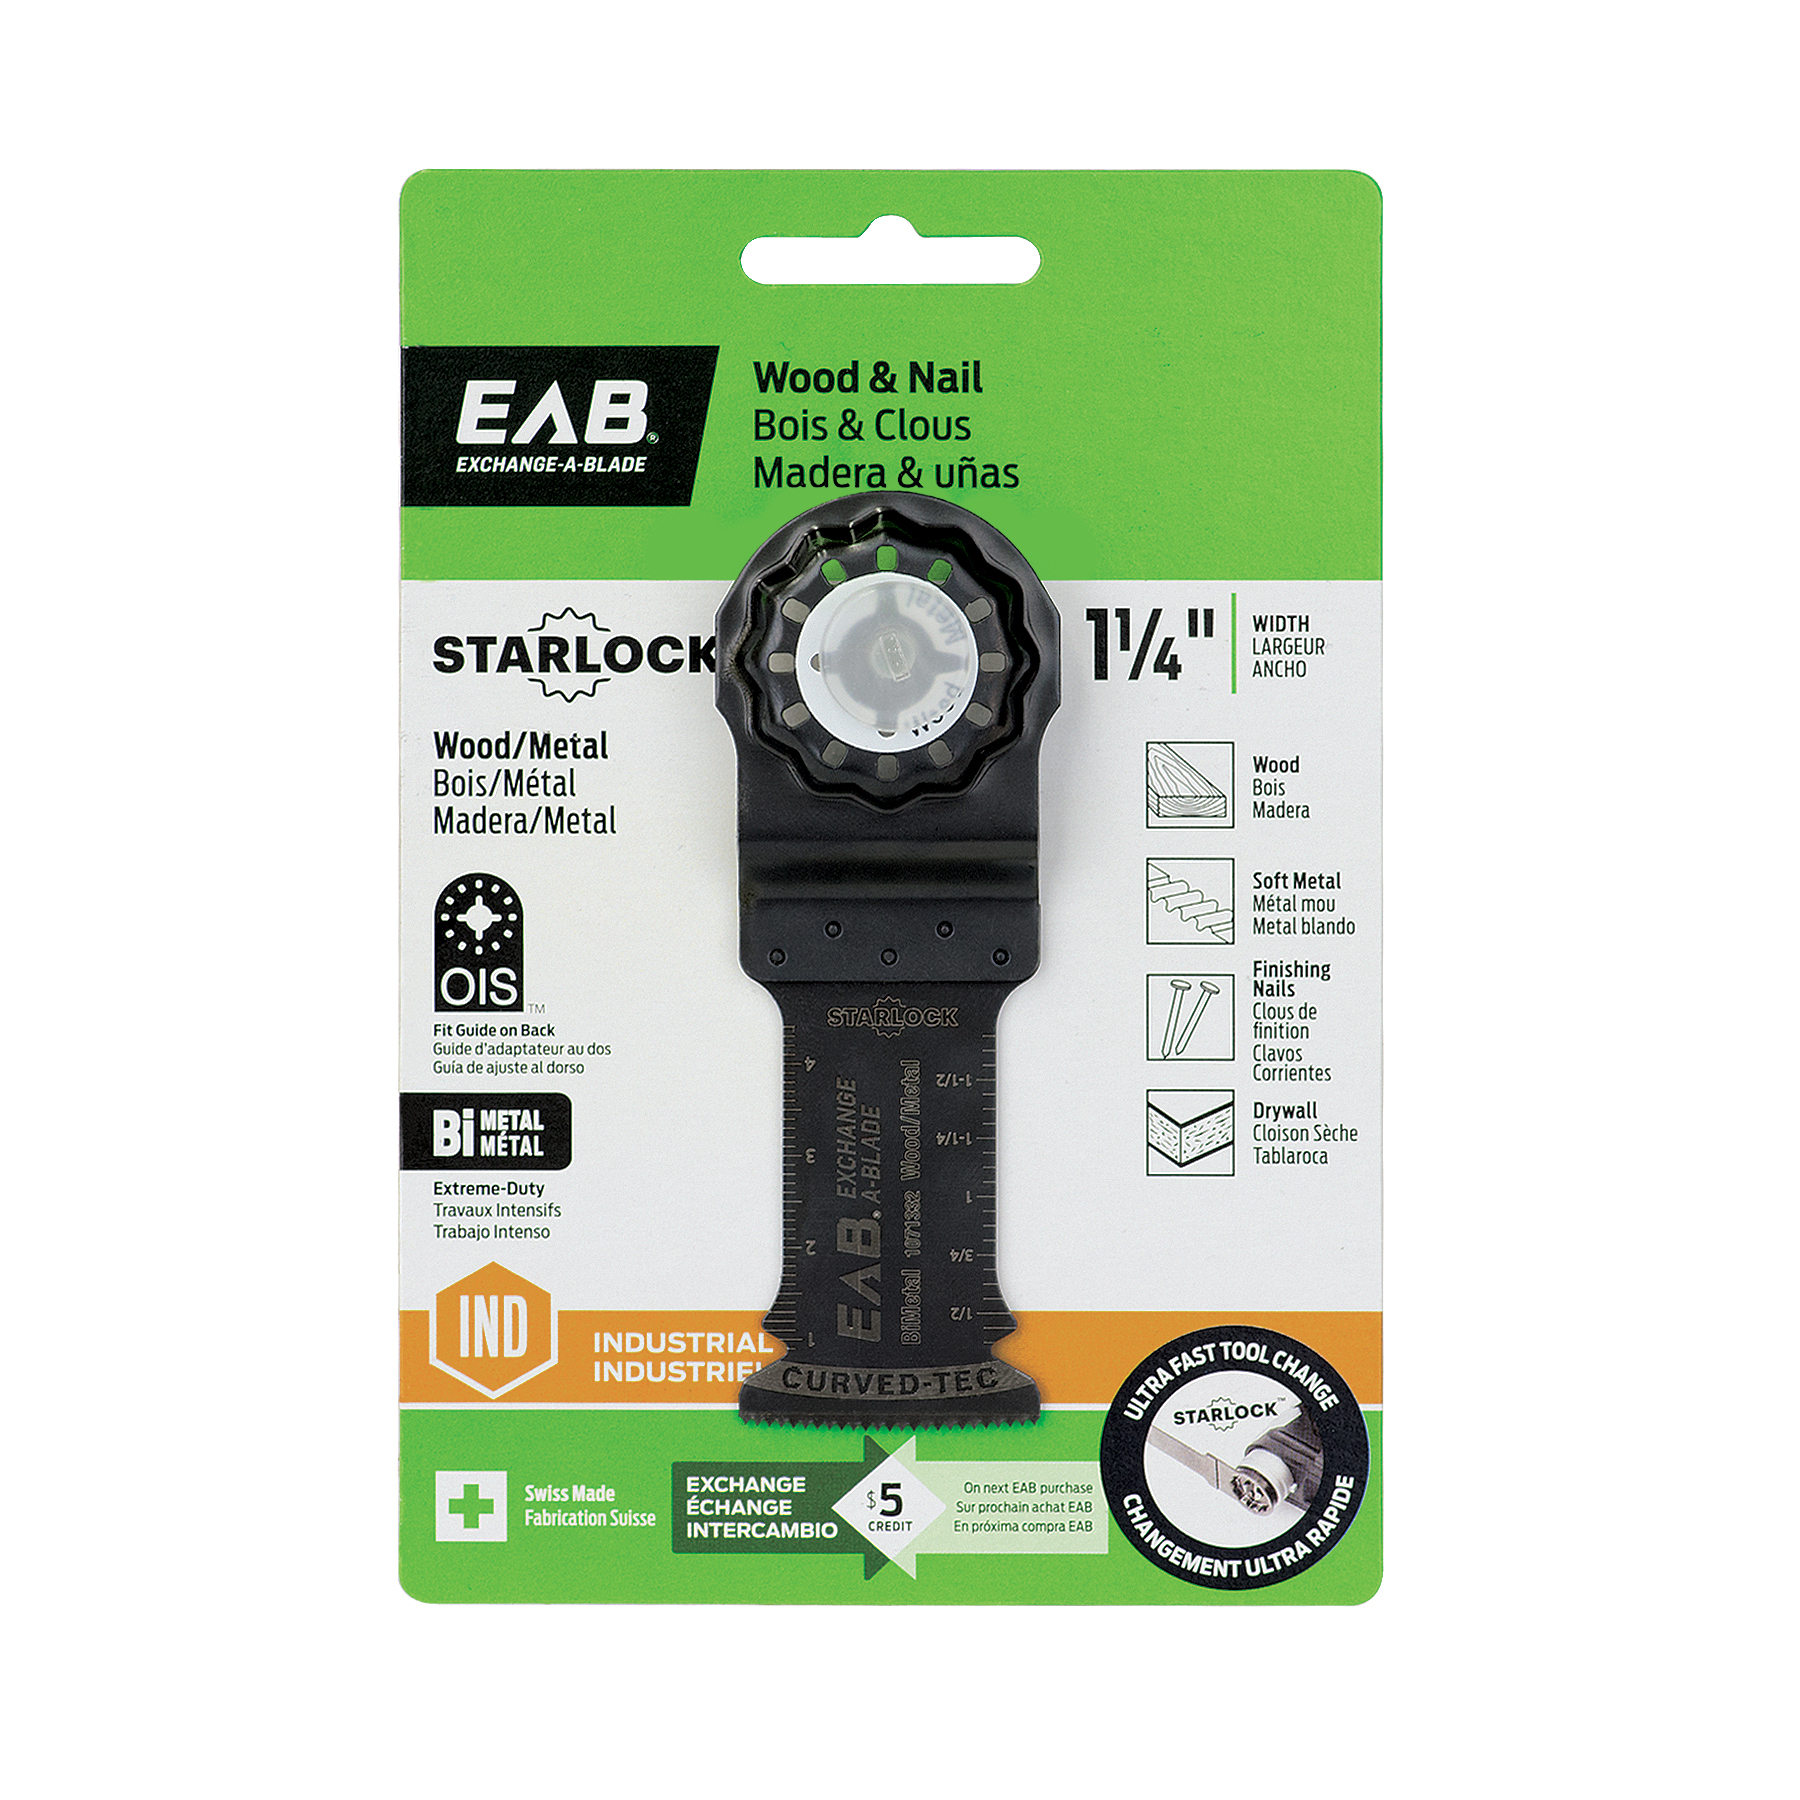 EAB (1071332) packaging